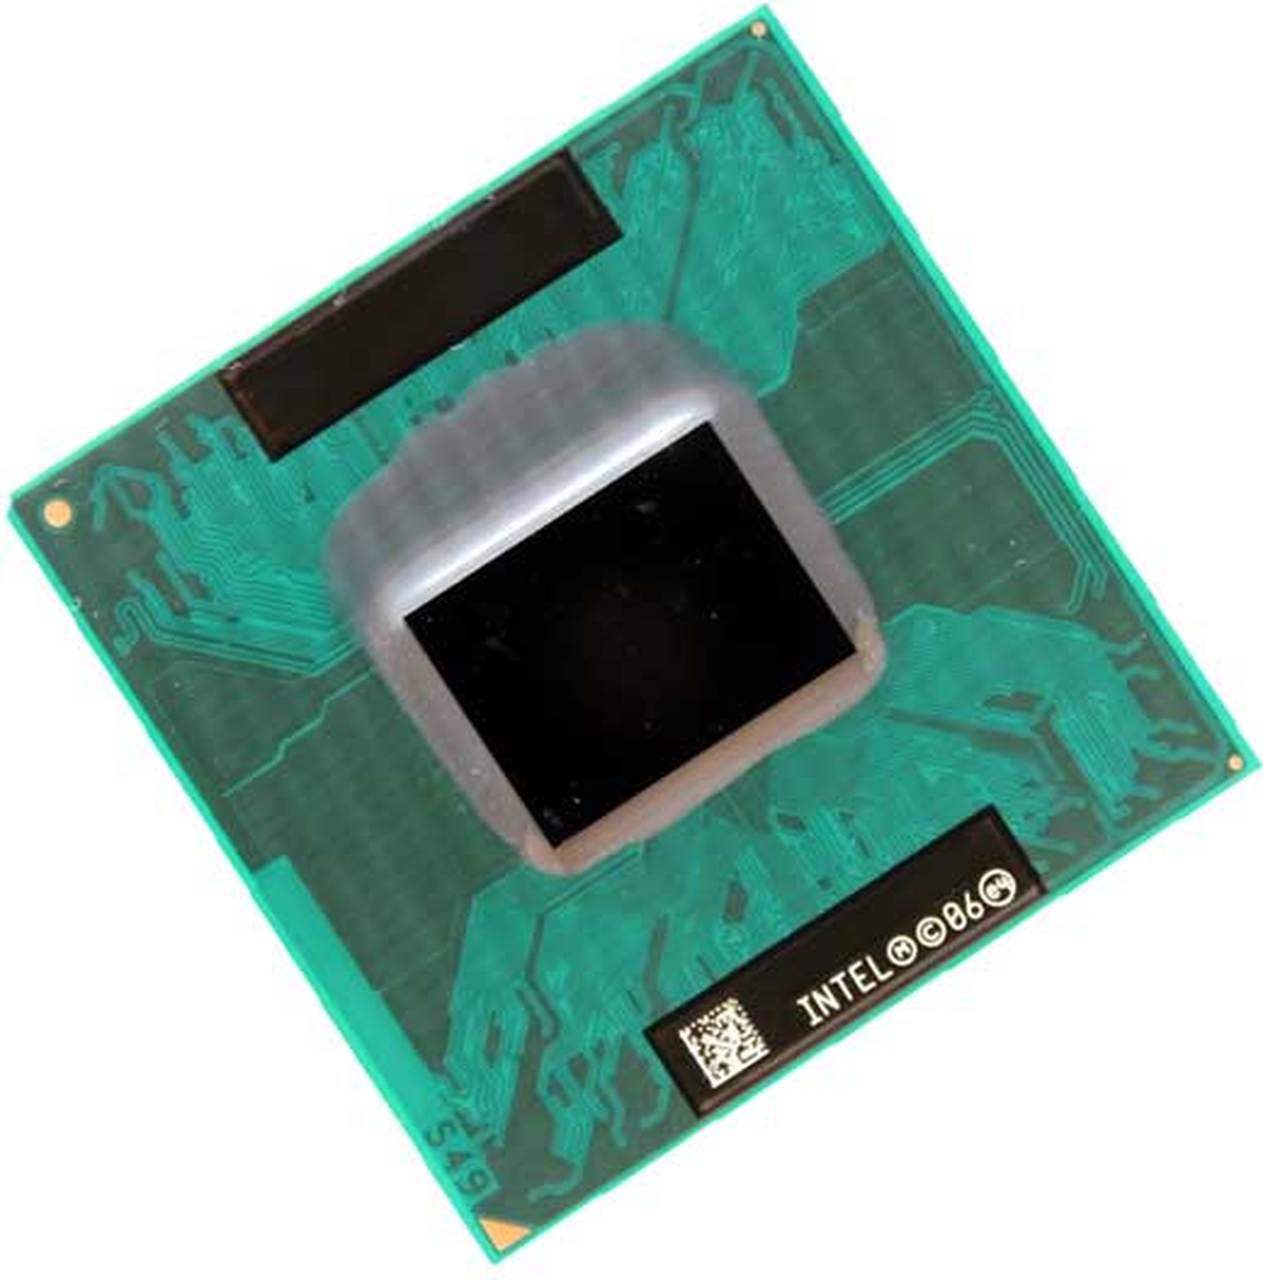 430200-001 | HP Core Solo T1400 1 Core 1.83GHz PGA478 2 MB L2 Processor